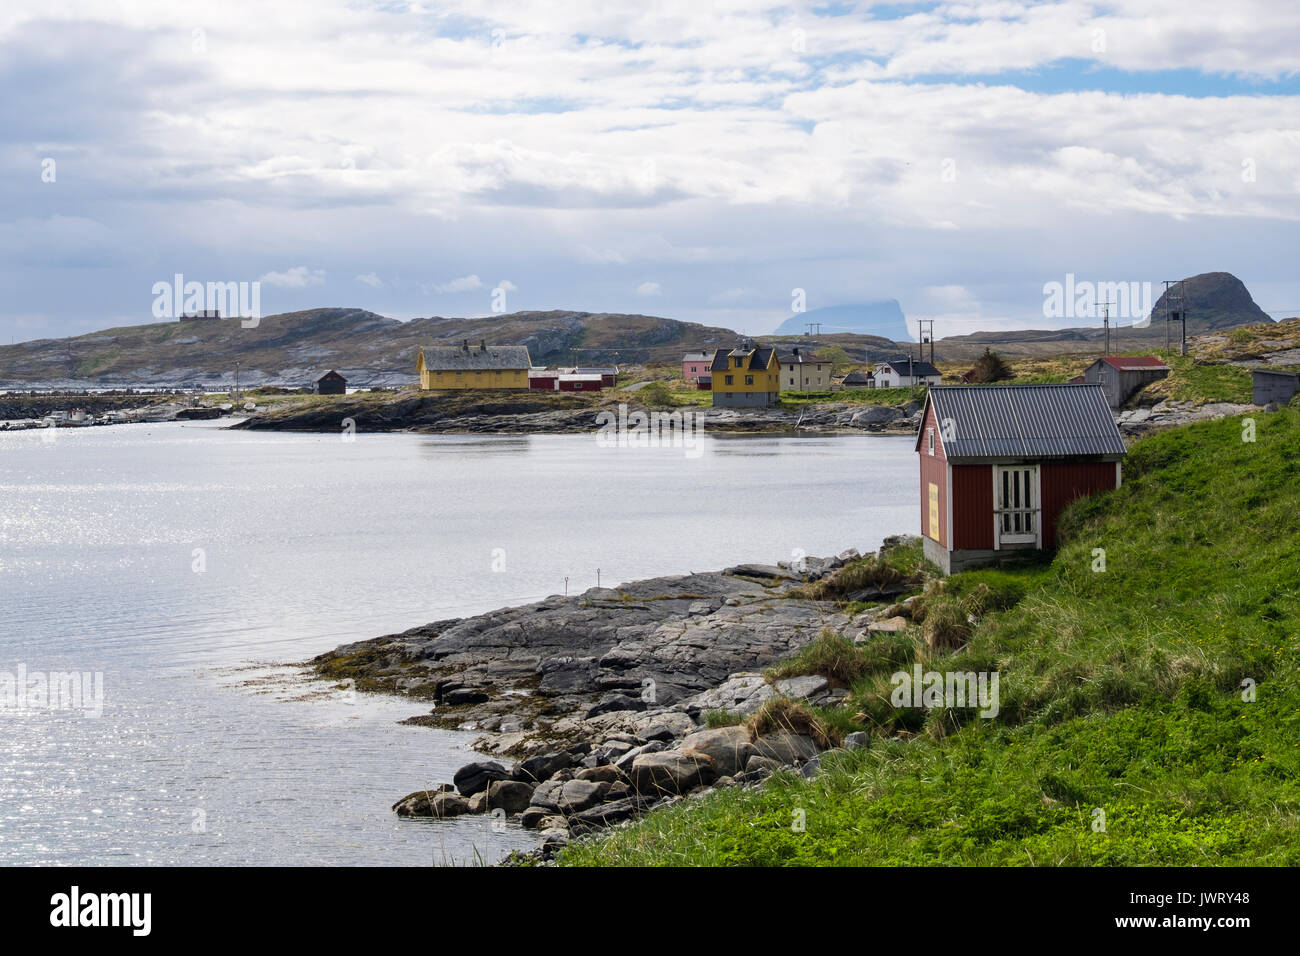 Ancien village de pêcheurs vieux maisons autour de baie abritée sur l'île de Sanna, Traena, comté de Nordland, Norvège, Scandinavie, l'Europe. Banque D'Images